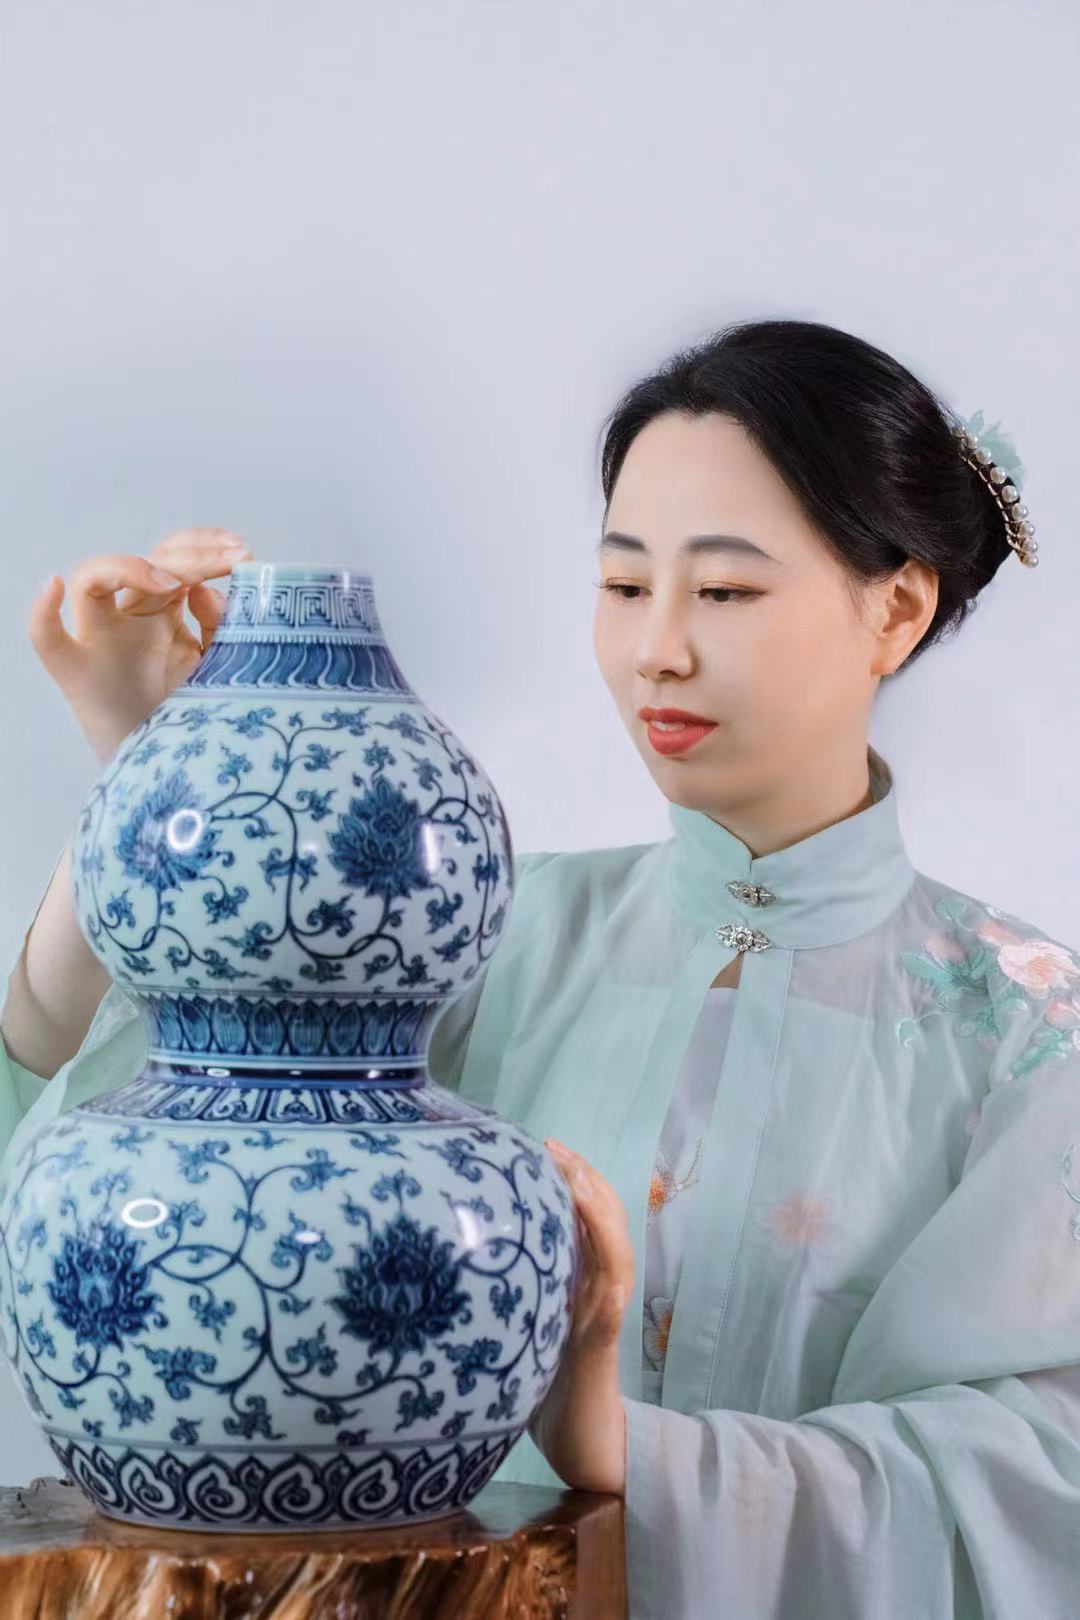 御成陶瓷亮相景德镇国际陶瓷博览会北京潘家园第三届陶瓷文化周